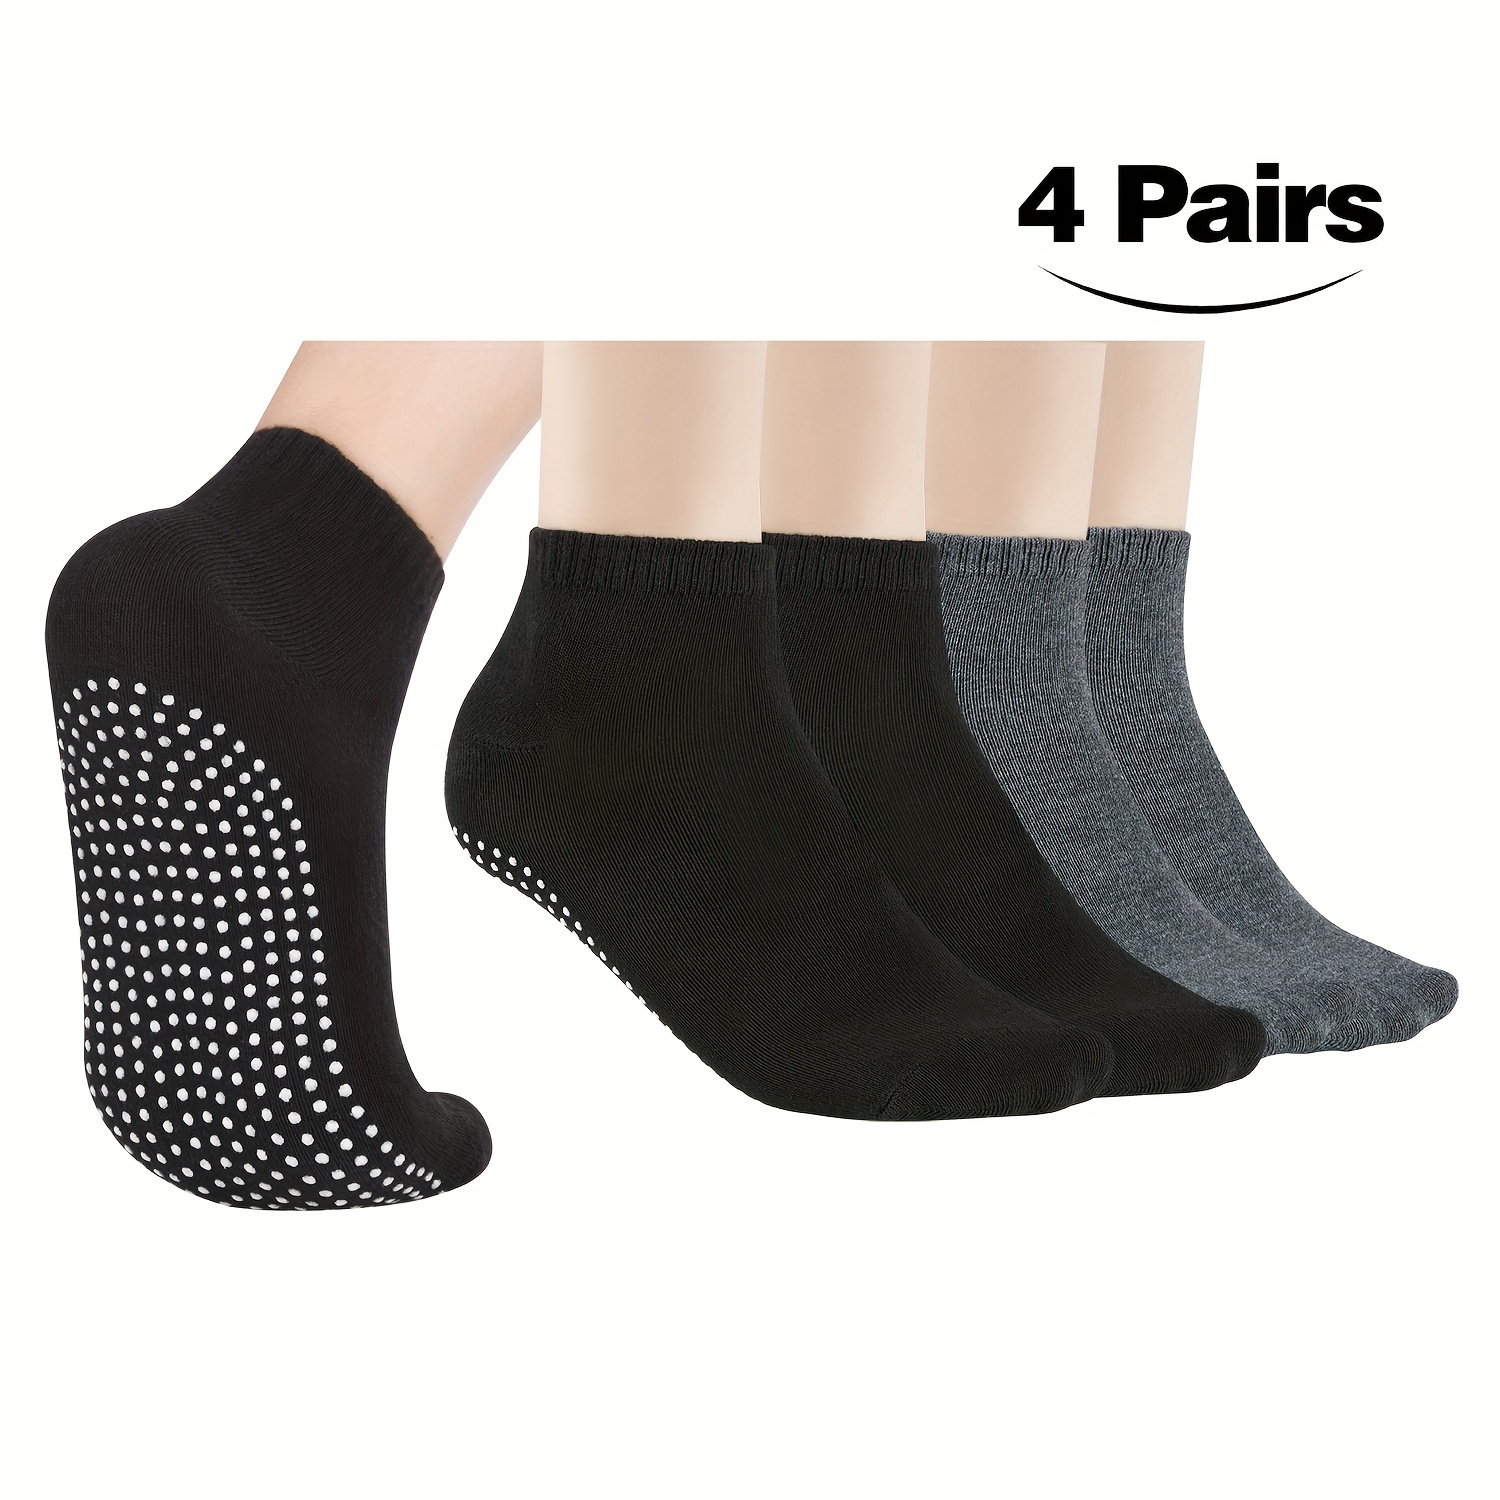 THE DANCESOCKS - Shoe Sock for Dance Fitness (2 Pair/Pack)